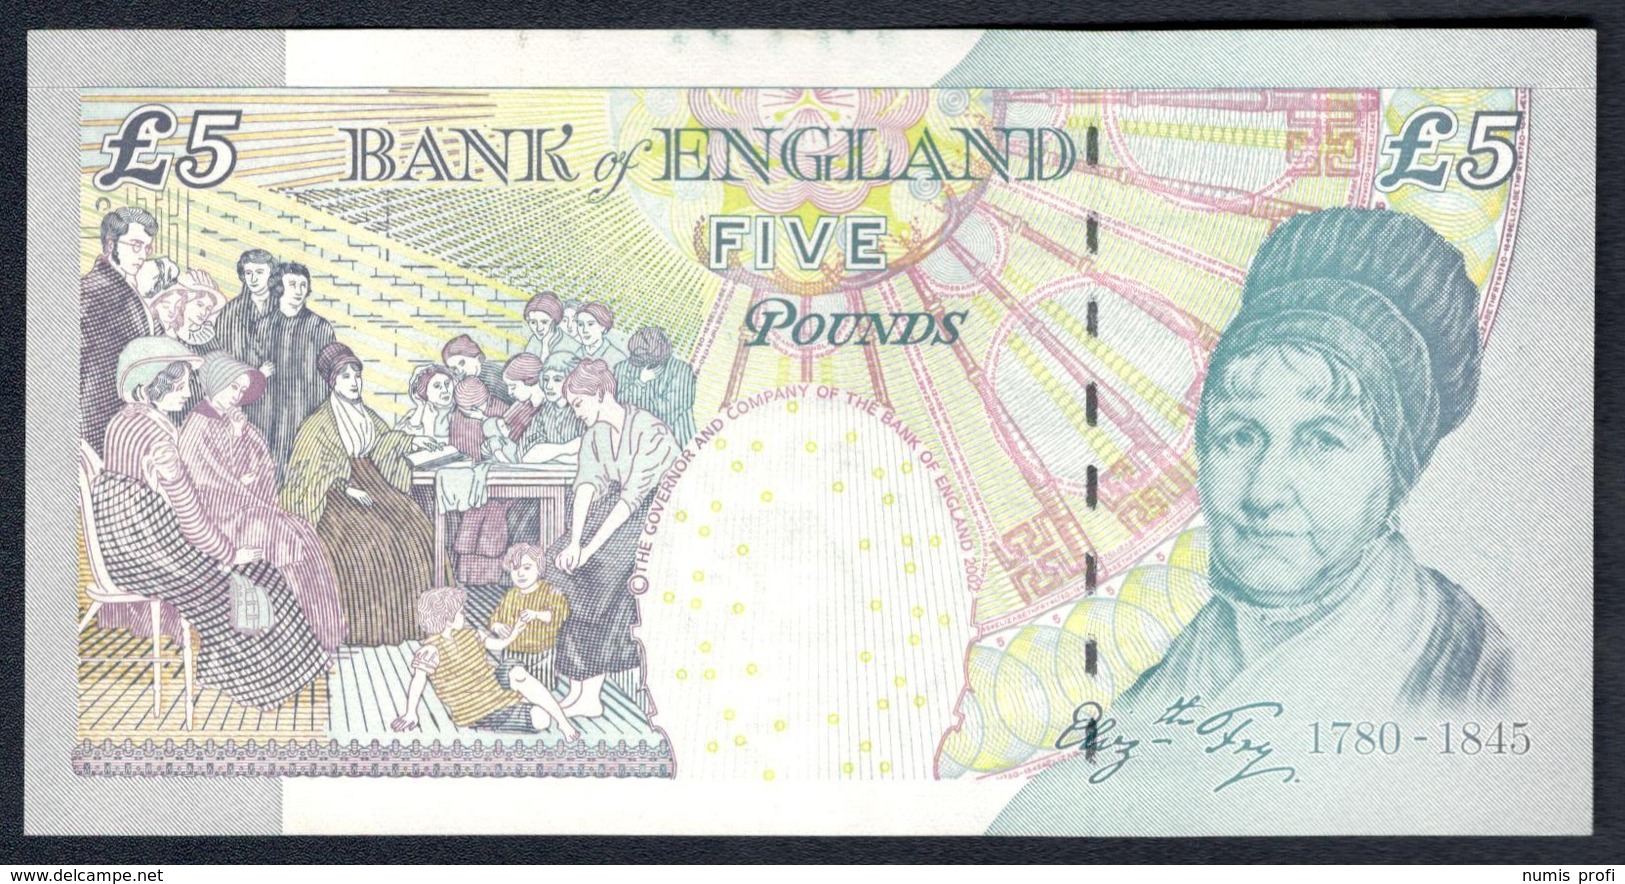 England - 5 Pounds 2002 - P.391d - 5 Pounds